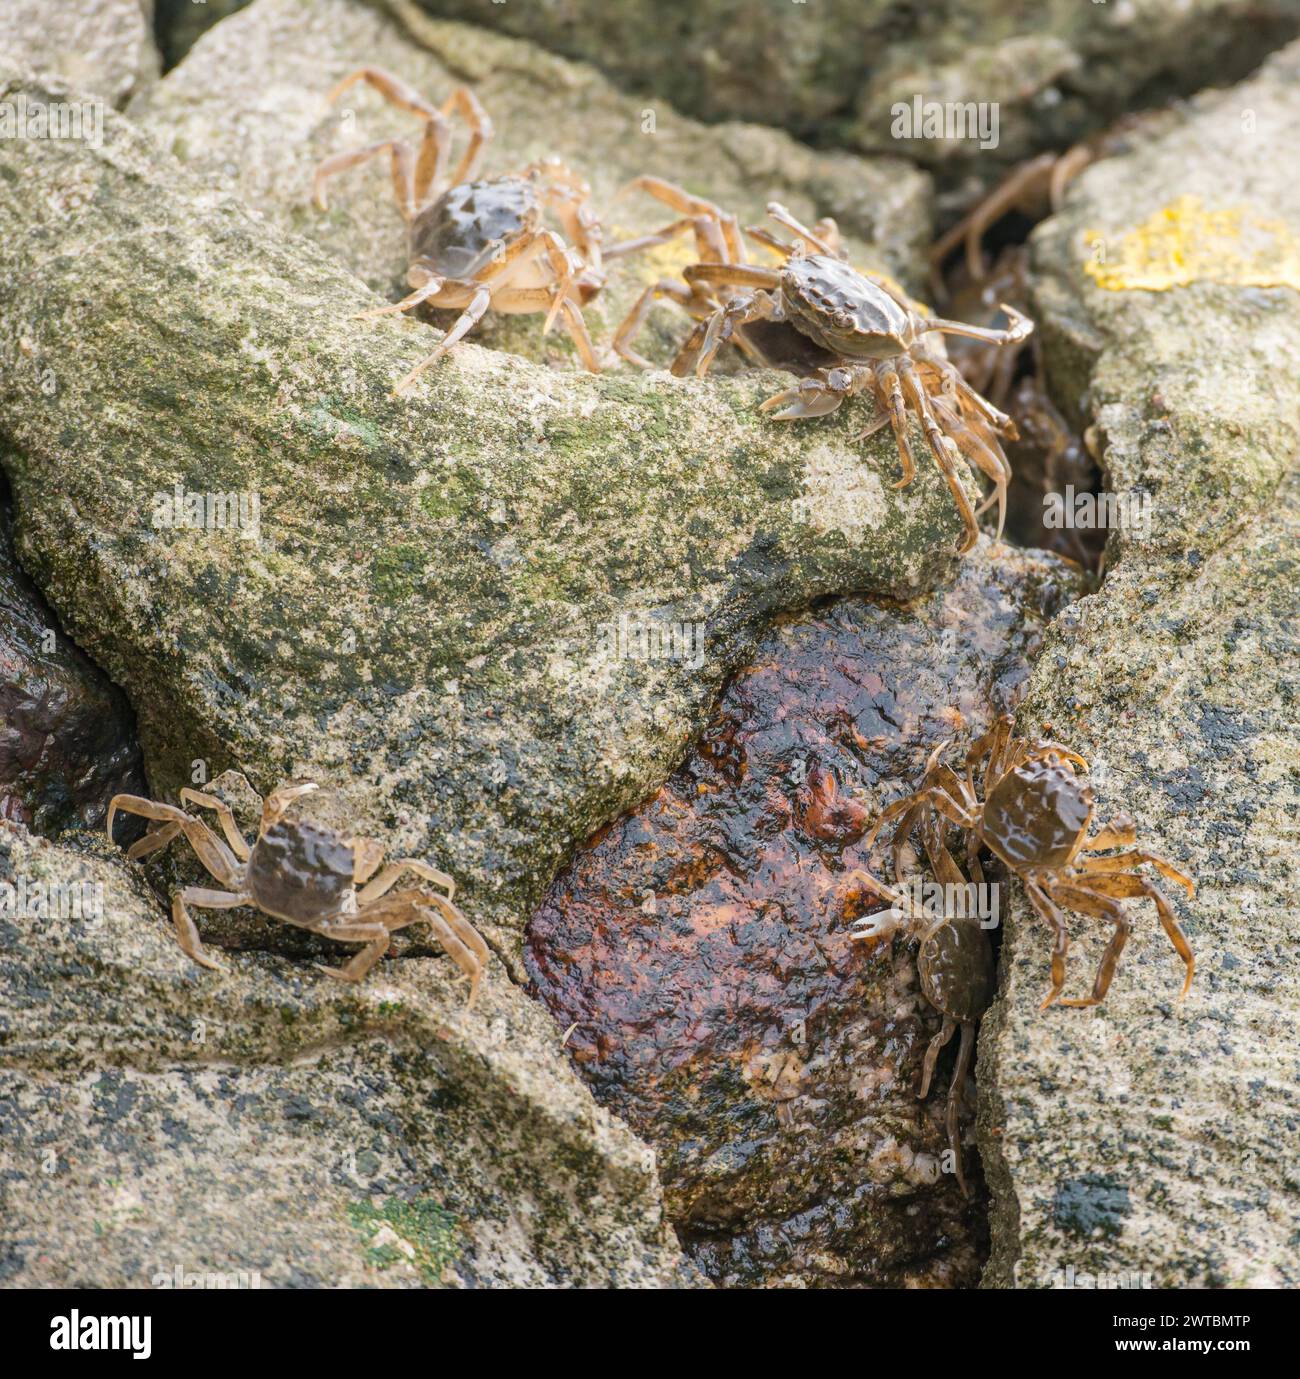 Viele chinesische Fäustkrabben (Eriocheir sinensis), invasive Arten, Neozoon, Krabben, Jungtiere bewegen sich und verstecken sich auf der Betonbank Stabilisierung, in der Stockfoto